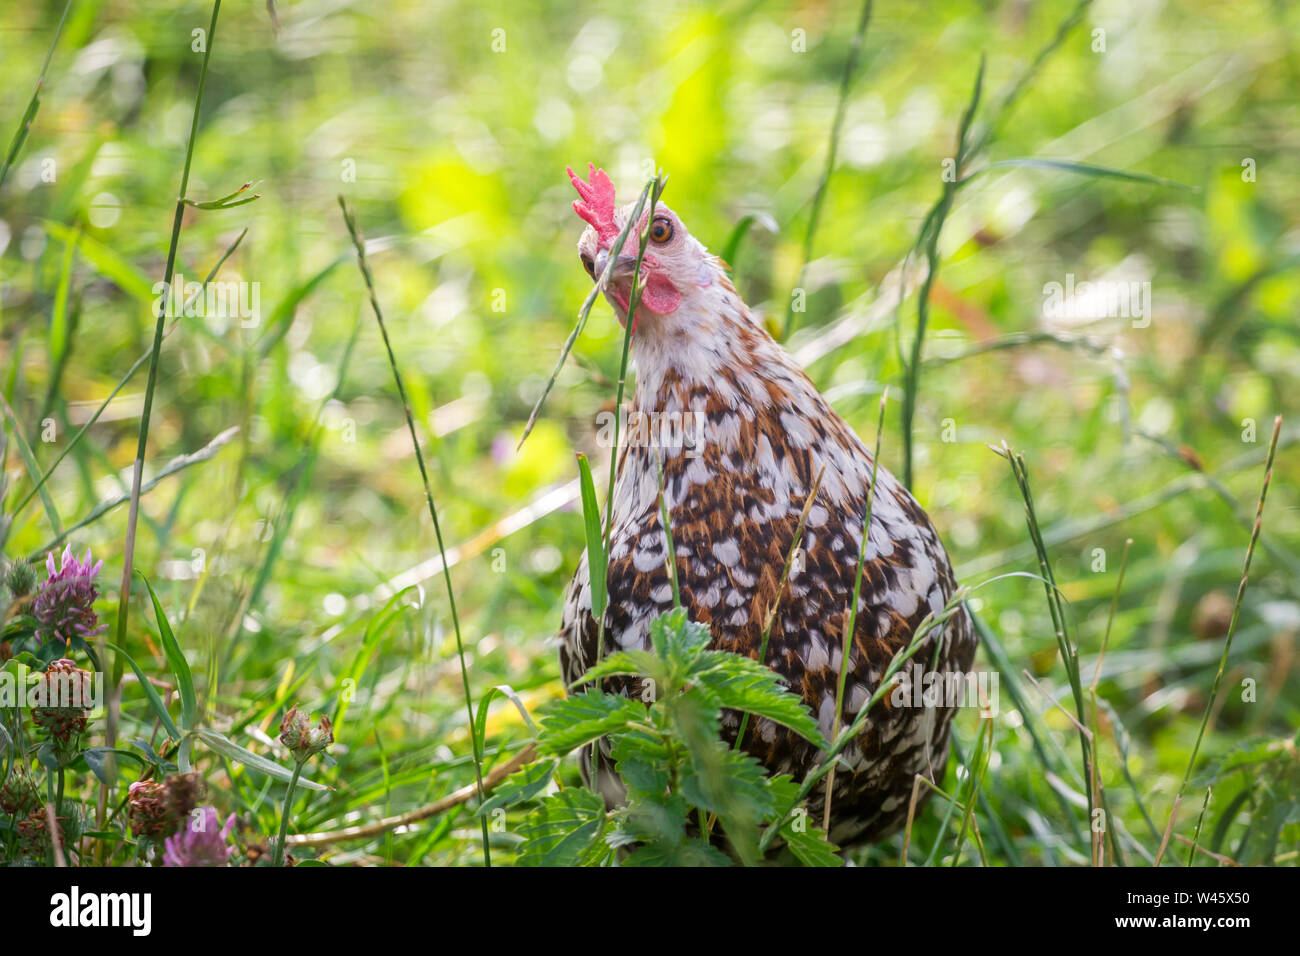 Henne picken Gras (Stoapiperl/Steinhendl, einer vom Aussterben bedrohten Rasse Huhn aus Österreich) Stockfoto